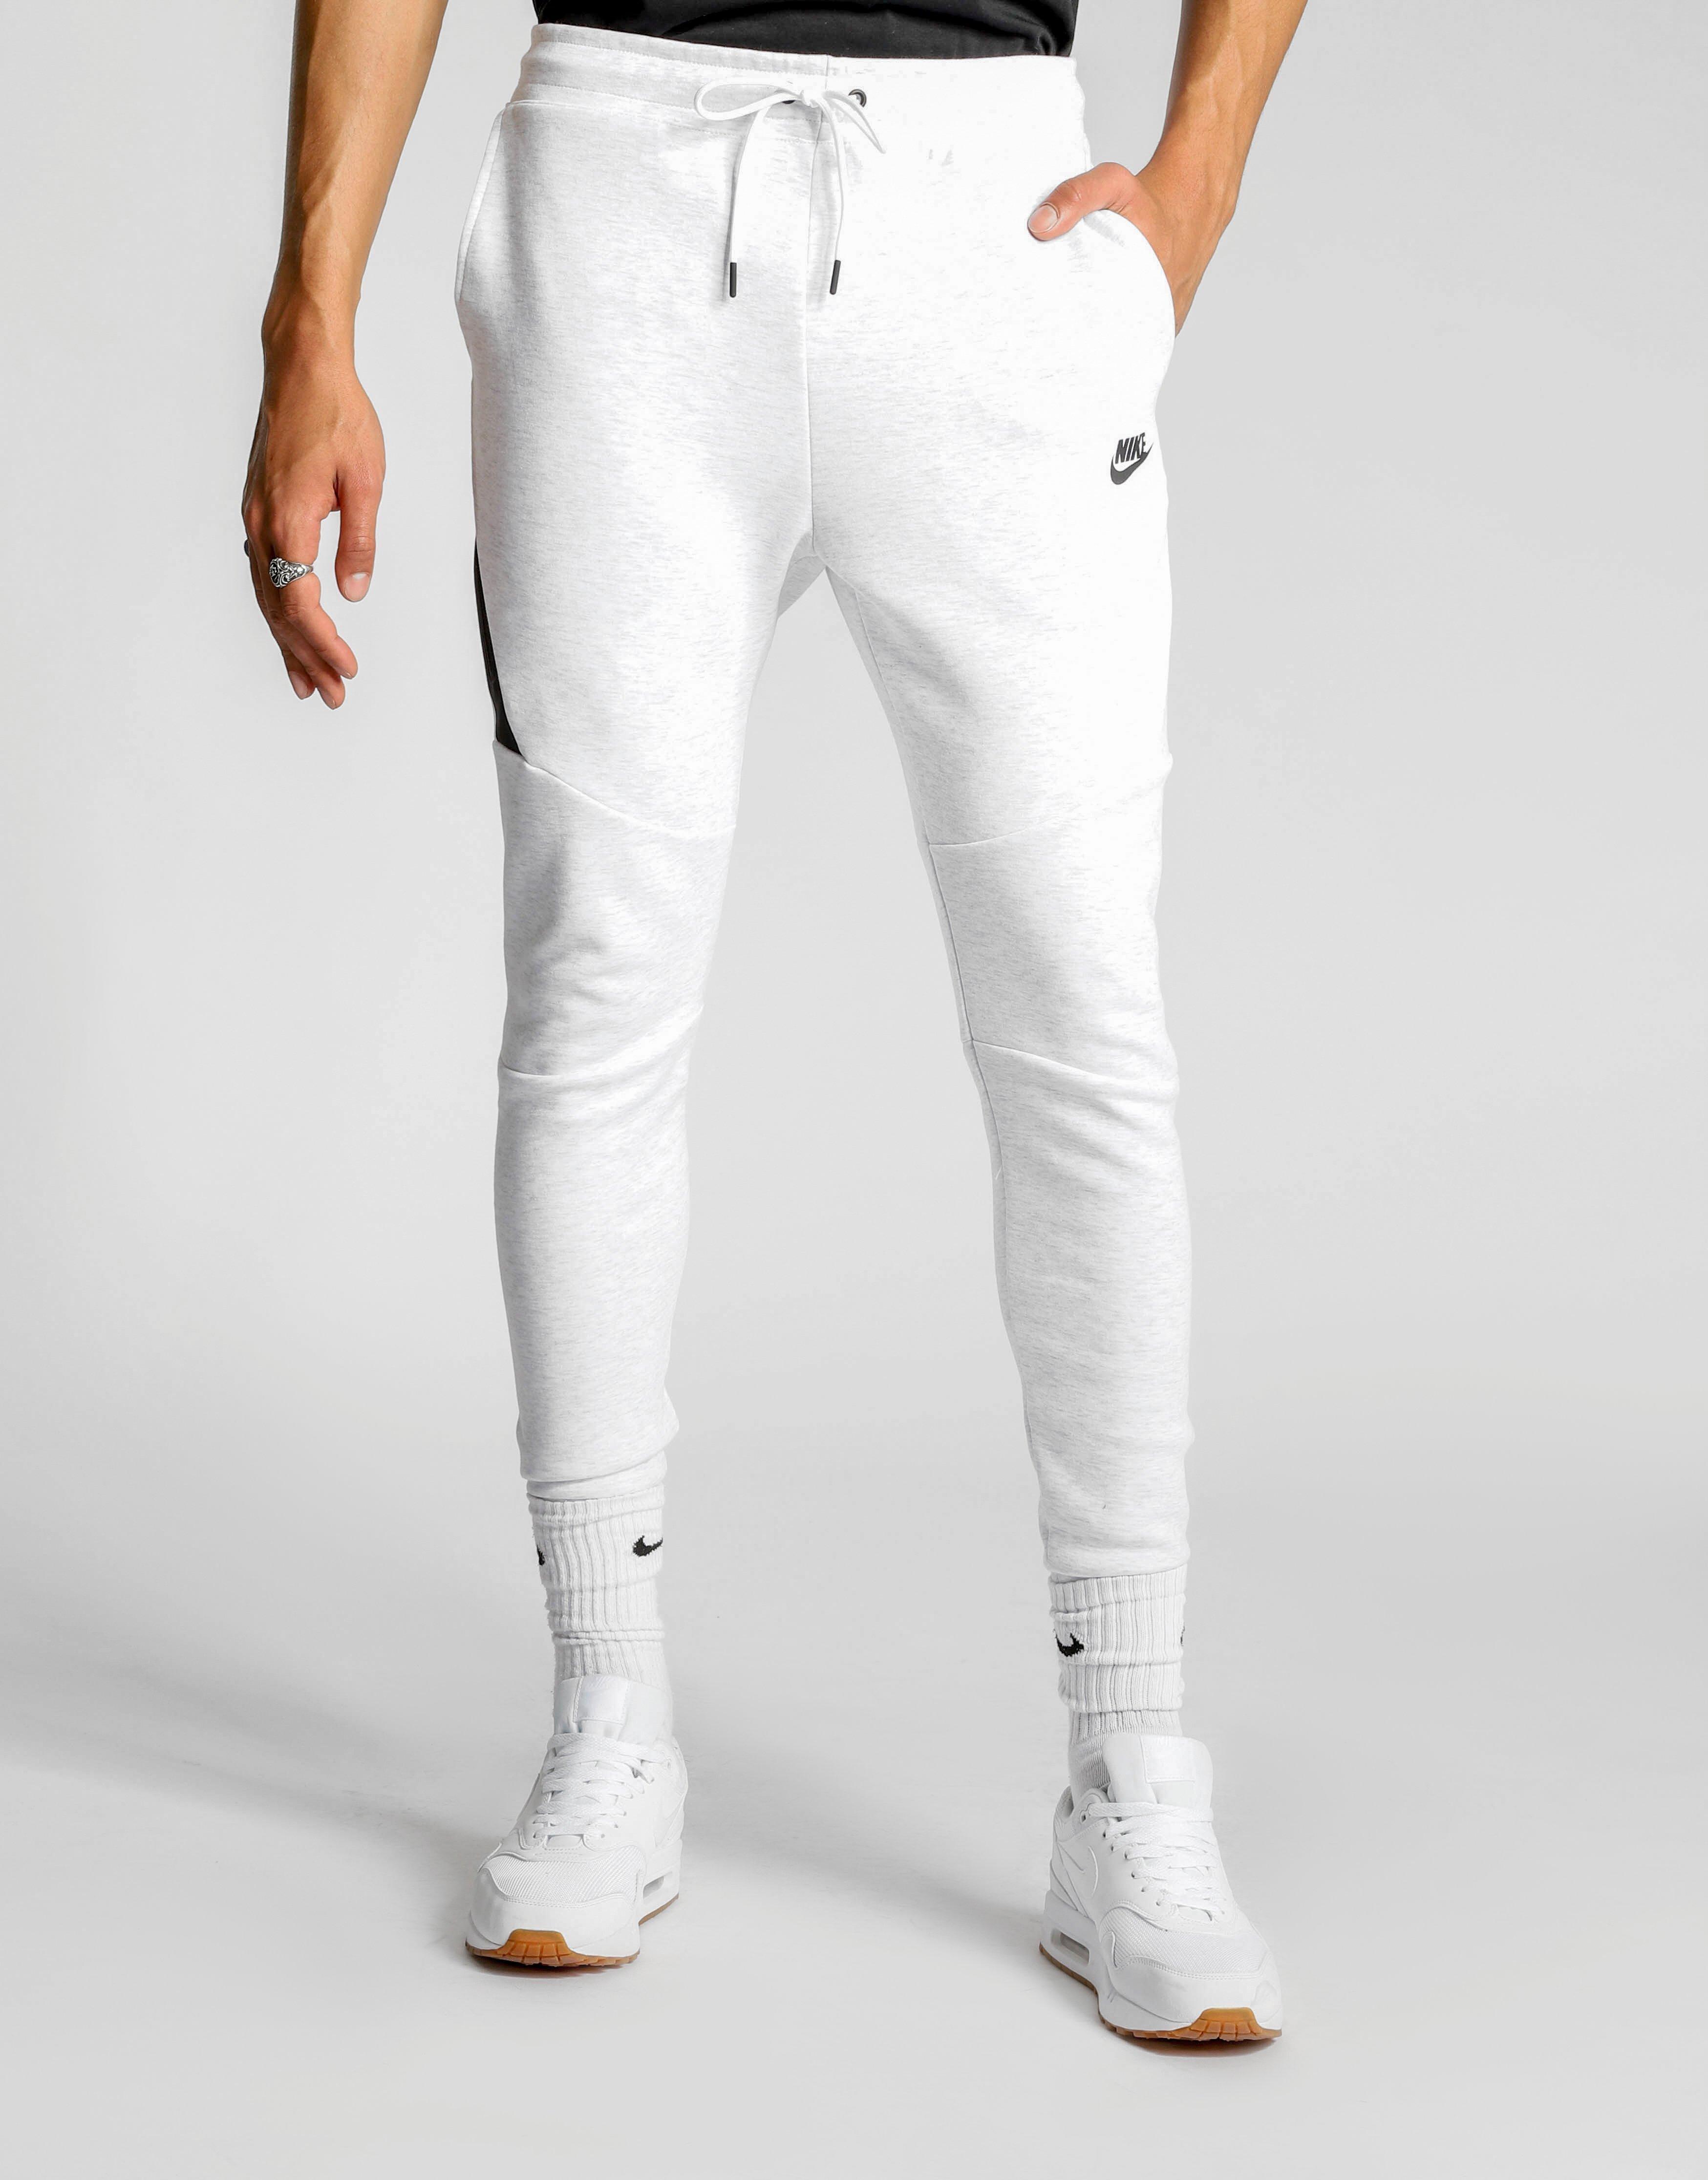 nike tech fleece white pants